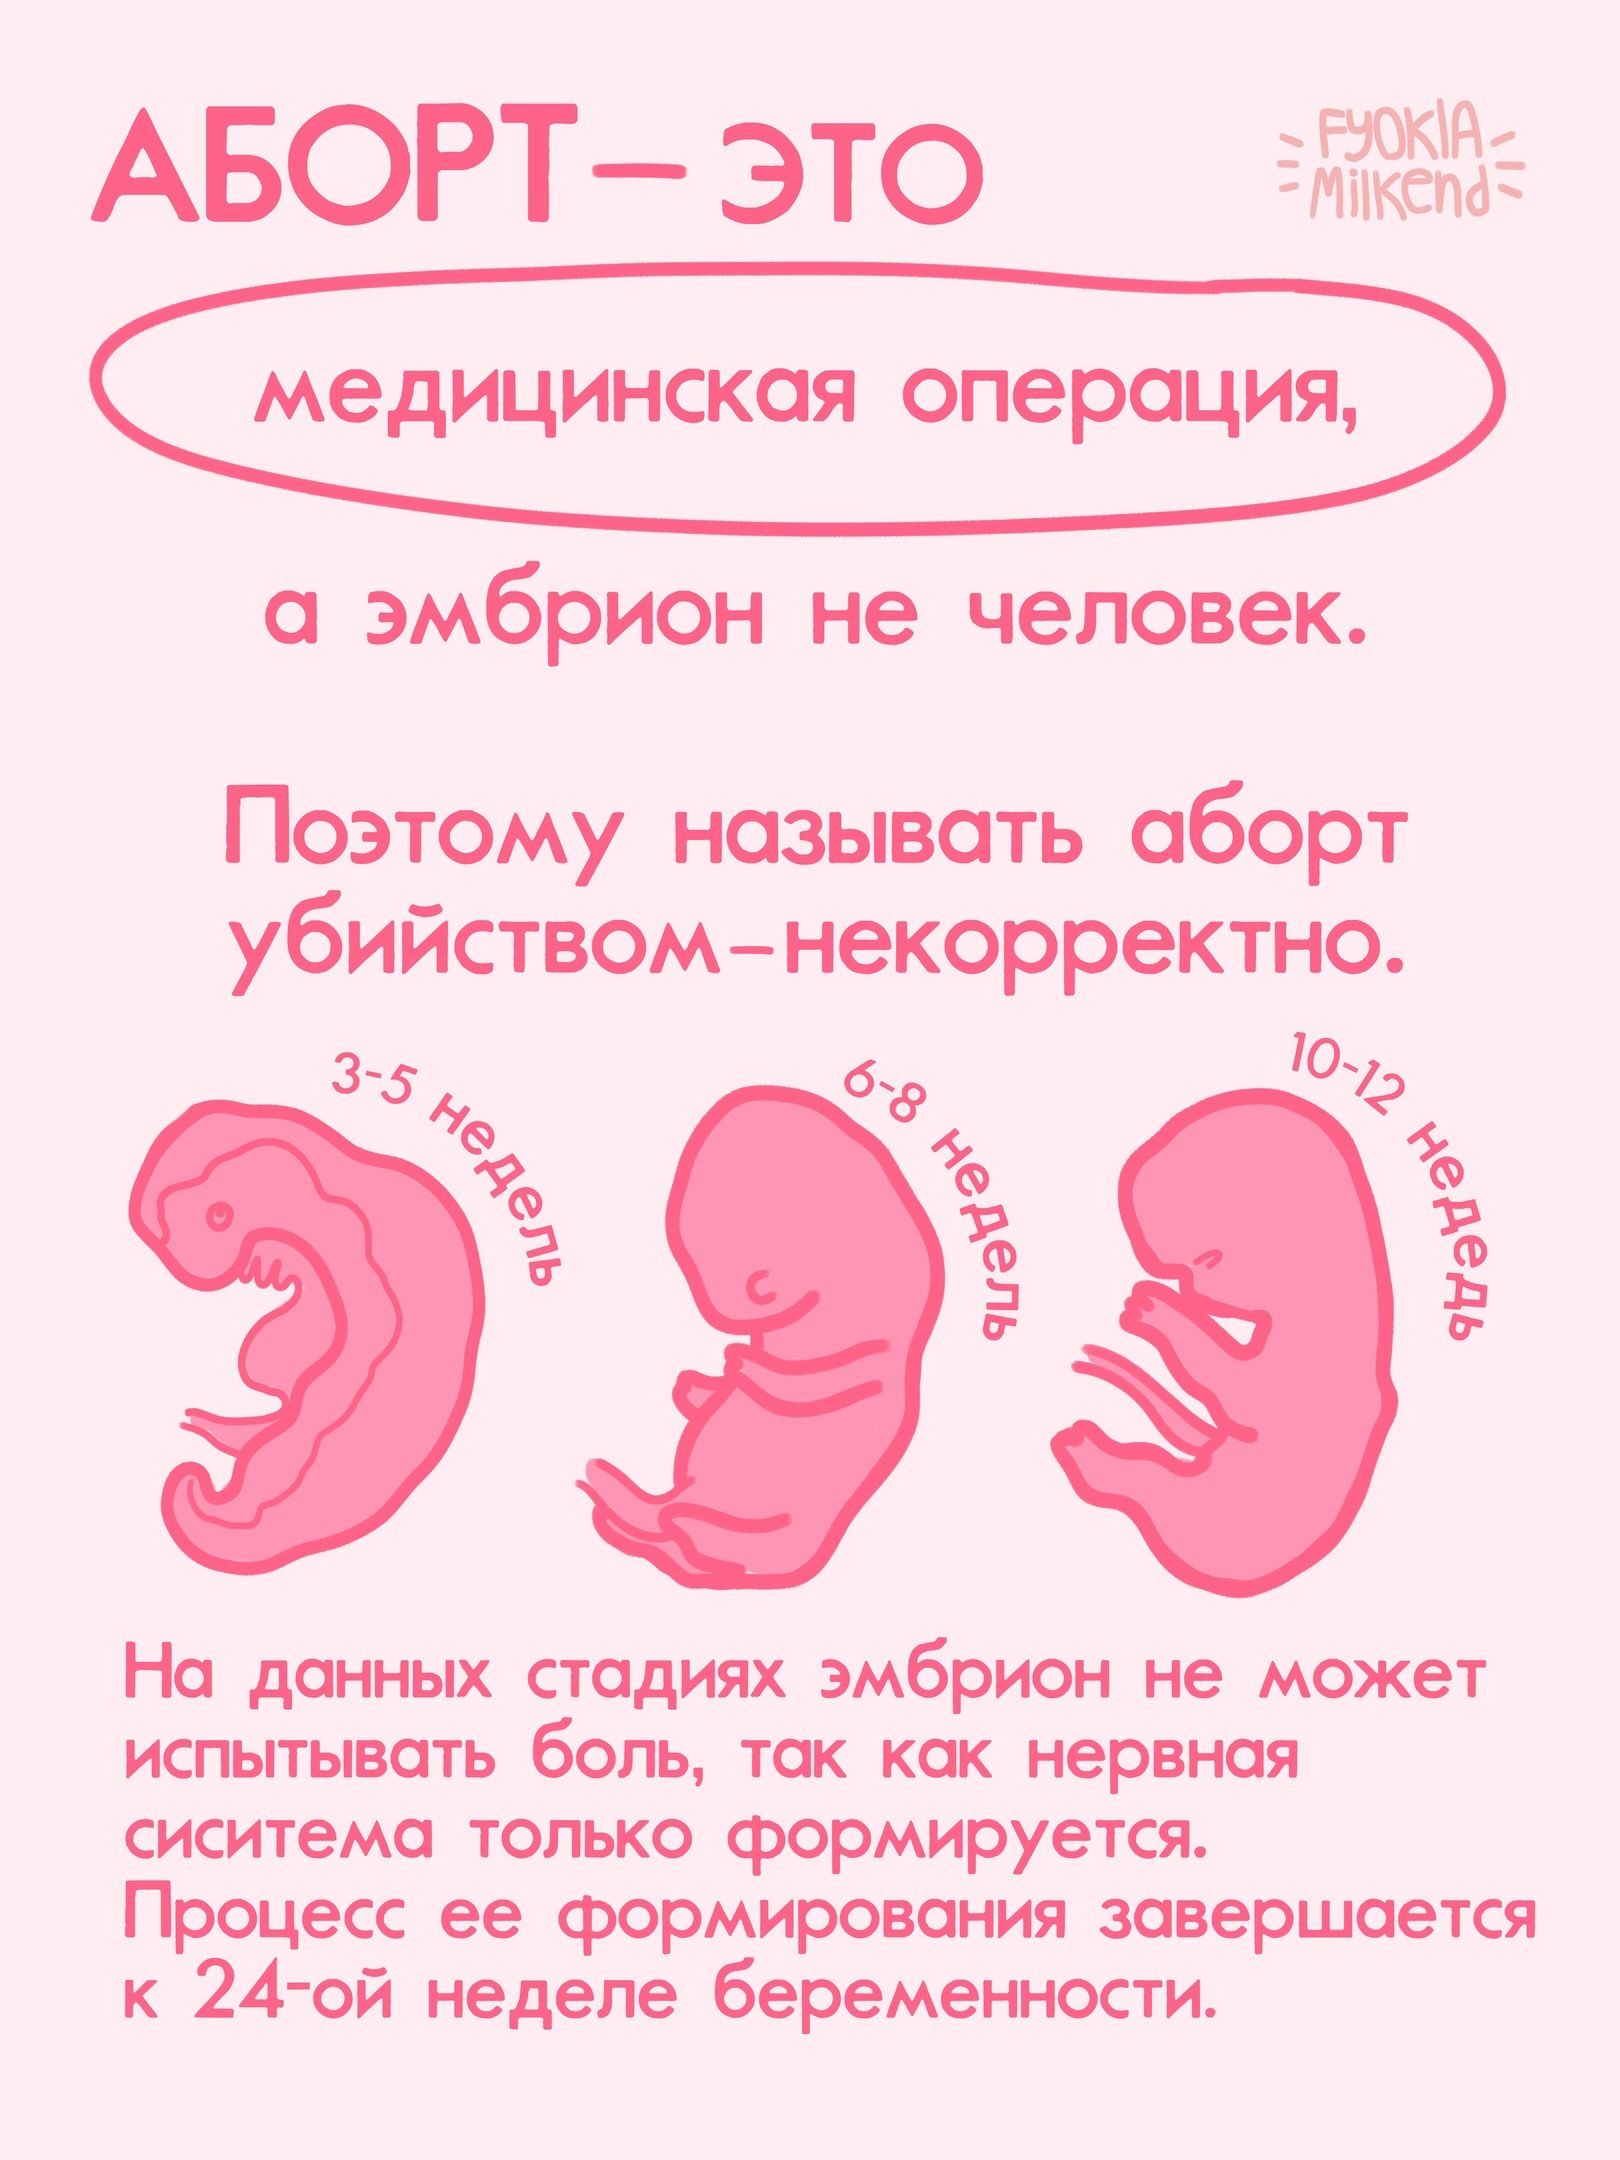 37 недель беременности сколько месяцев. Борт. Прерывание беременности - аборт. Недели беременности по месяцам. Прерывание беременности до 12 недель и после.